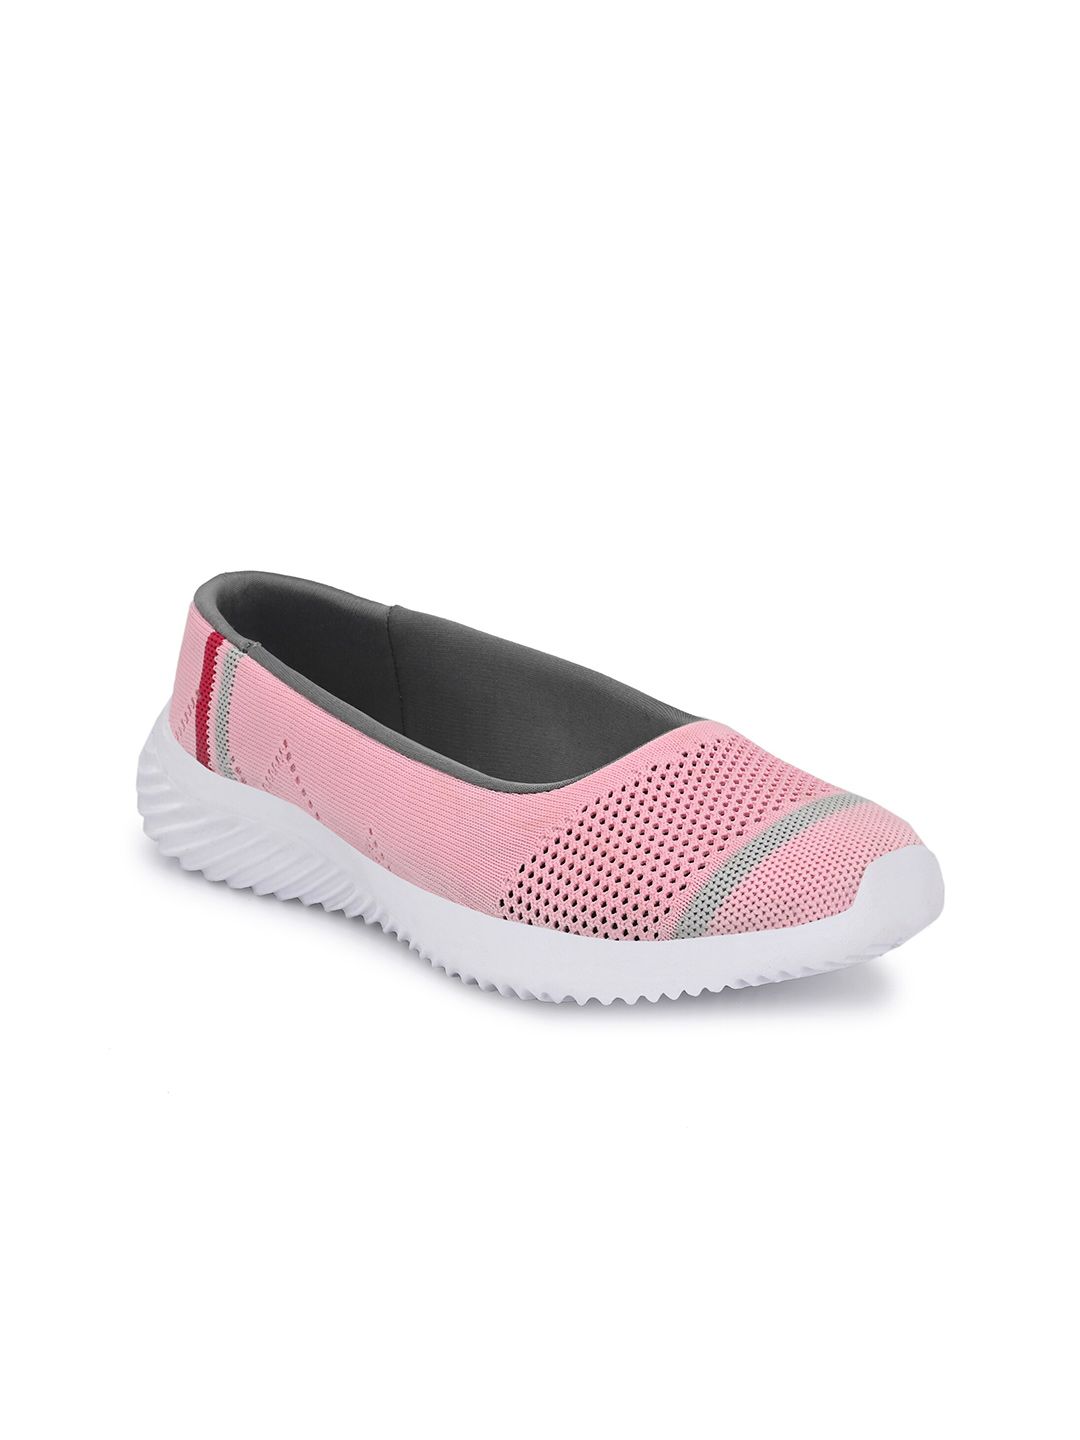 Yuuki Women Pink Mesh Walking Non-Marking Shoes Price in India